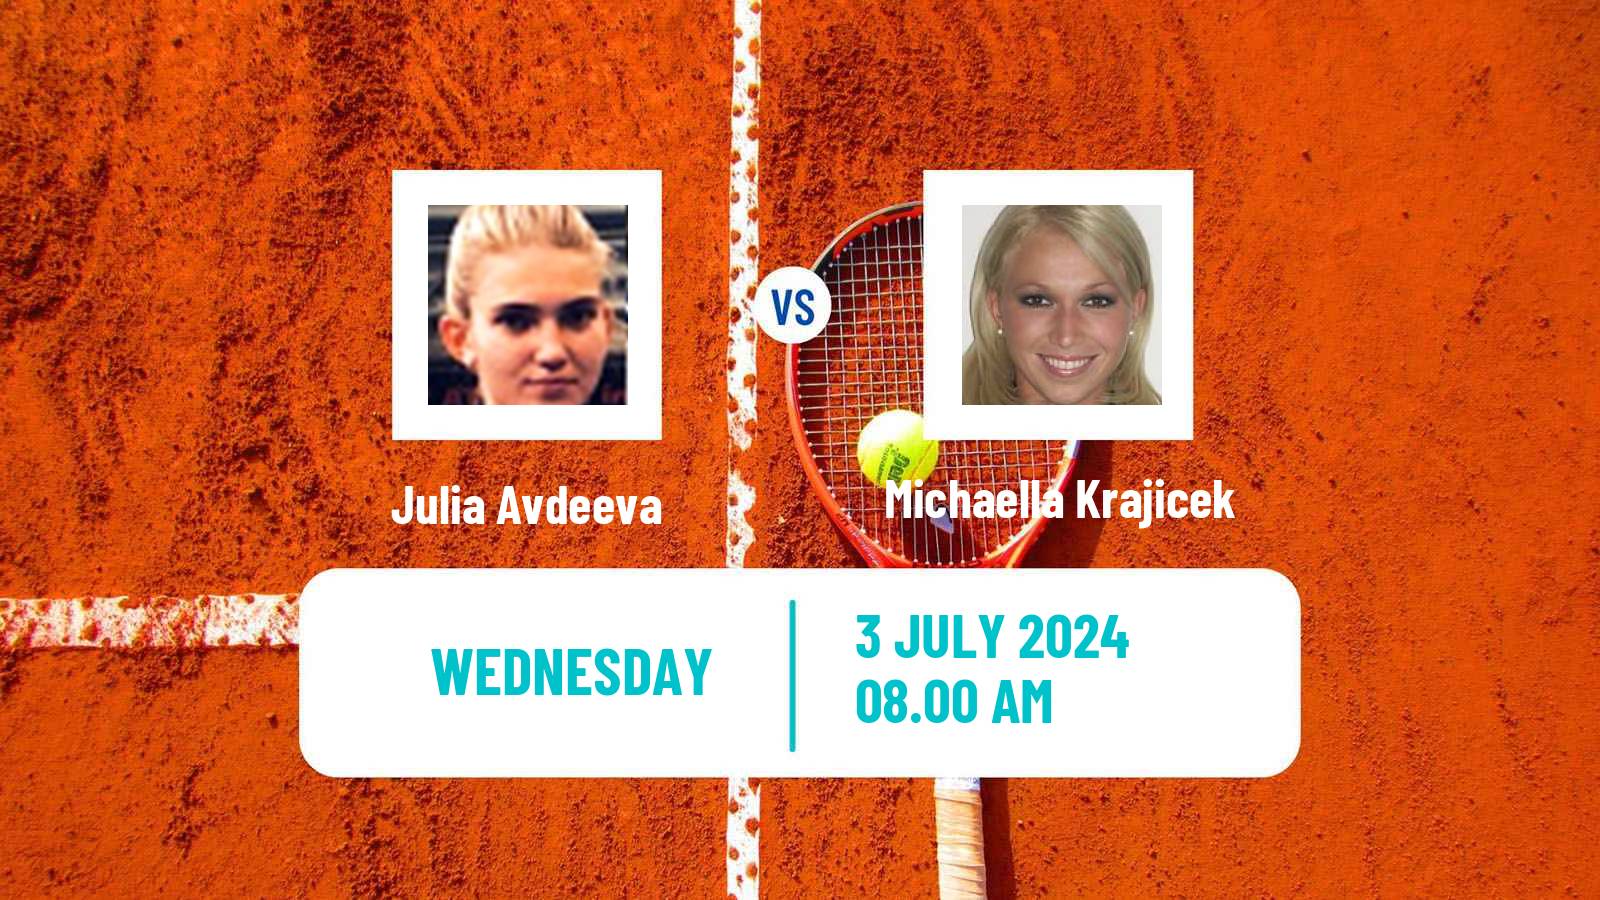 Tennis ITF W35 Amstelveen Women Julia Avdeeva - Michaella Krajicek